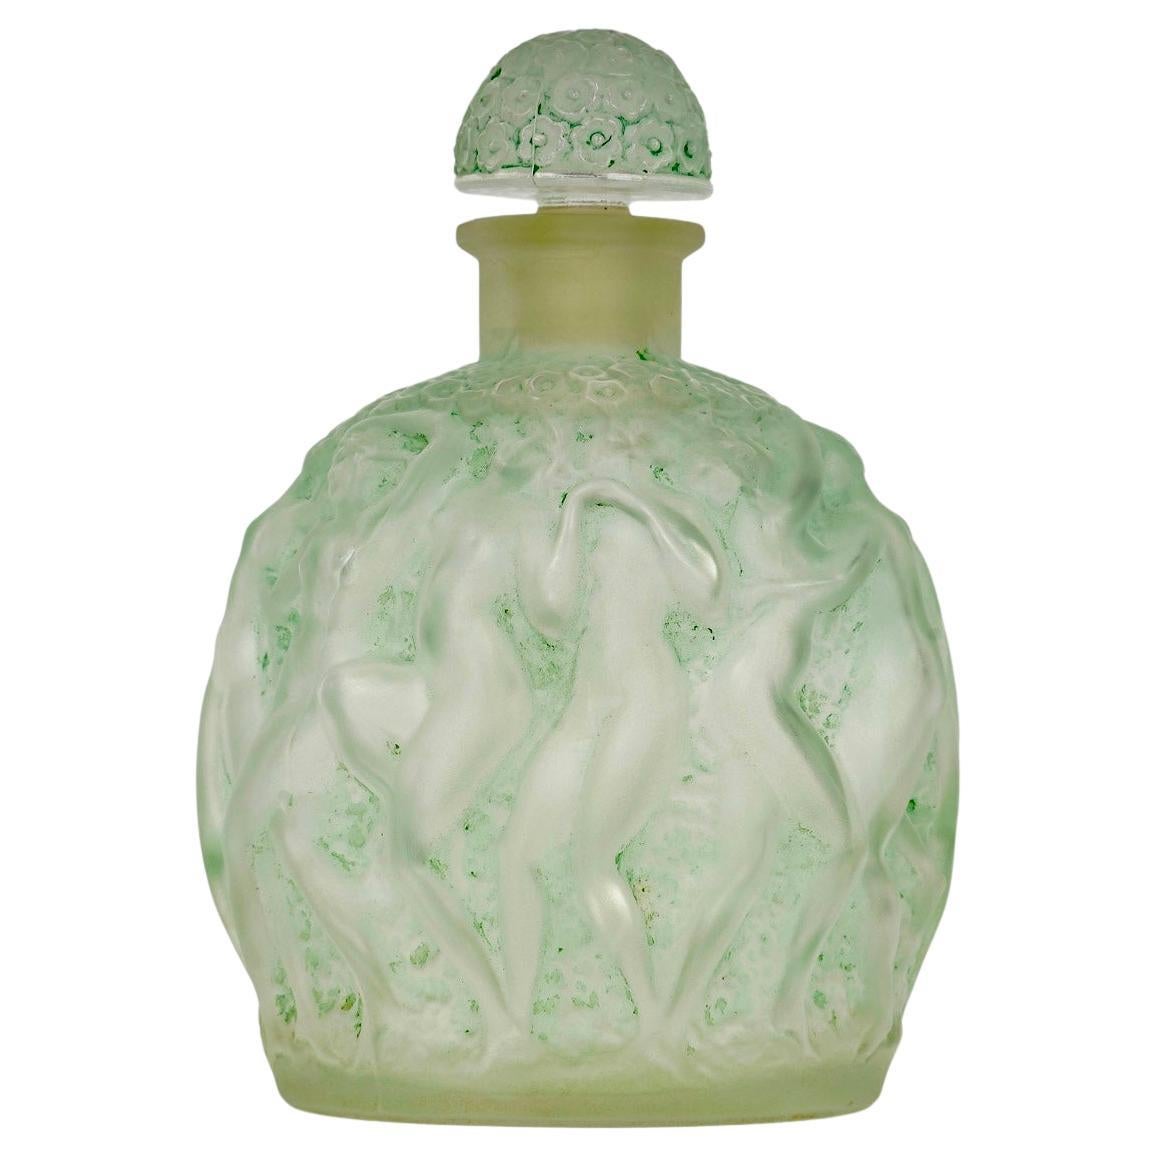 1937 Rene Lalique Parfümflasche Calendal für Molinard aus Glas mit grüner Patina